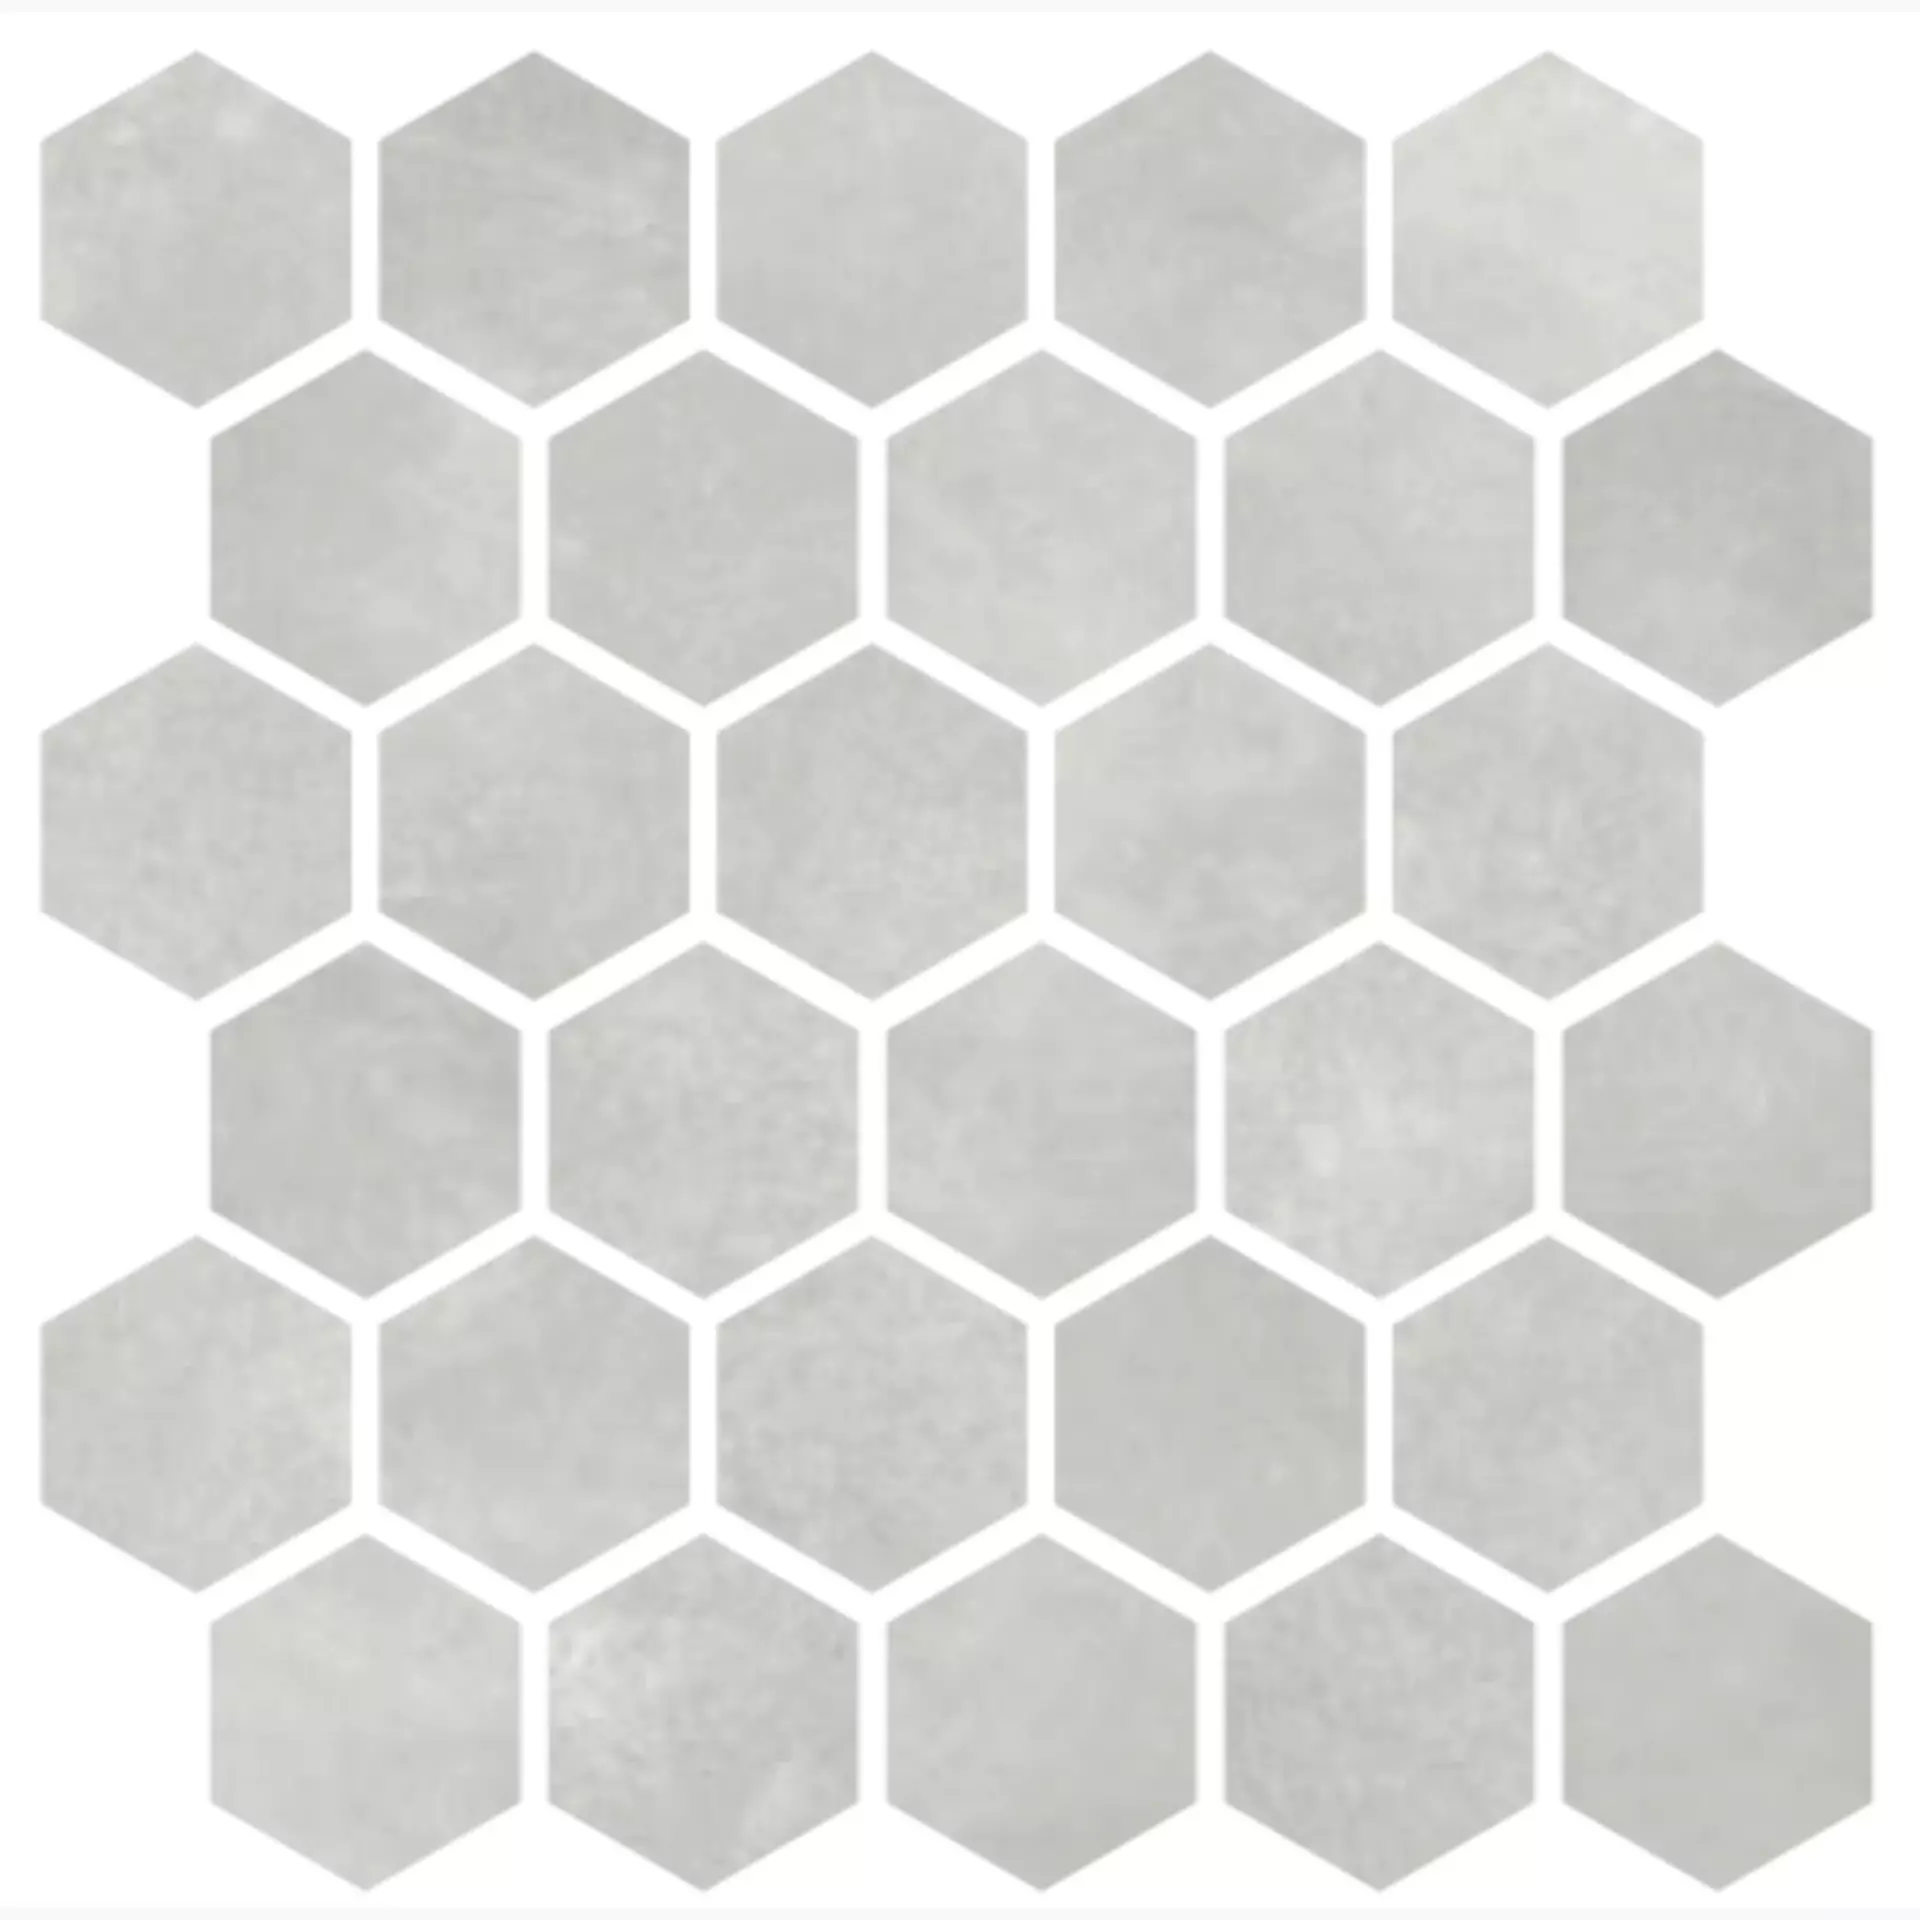 CIR Materia Prima Grey Naturale Mosaik Hexagon 1069911 27x27cm